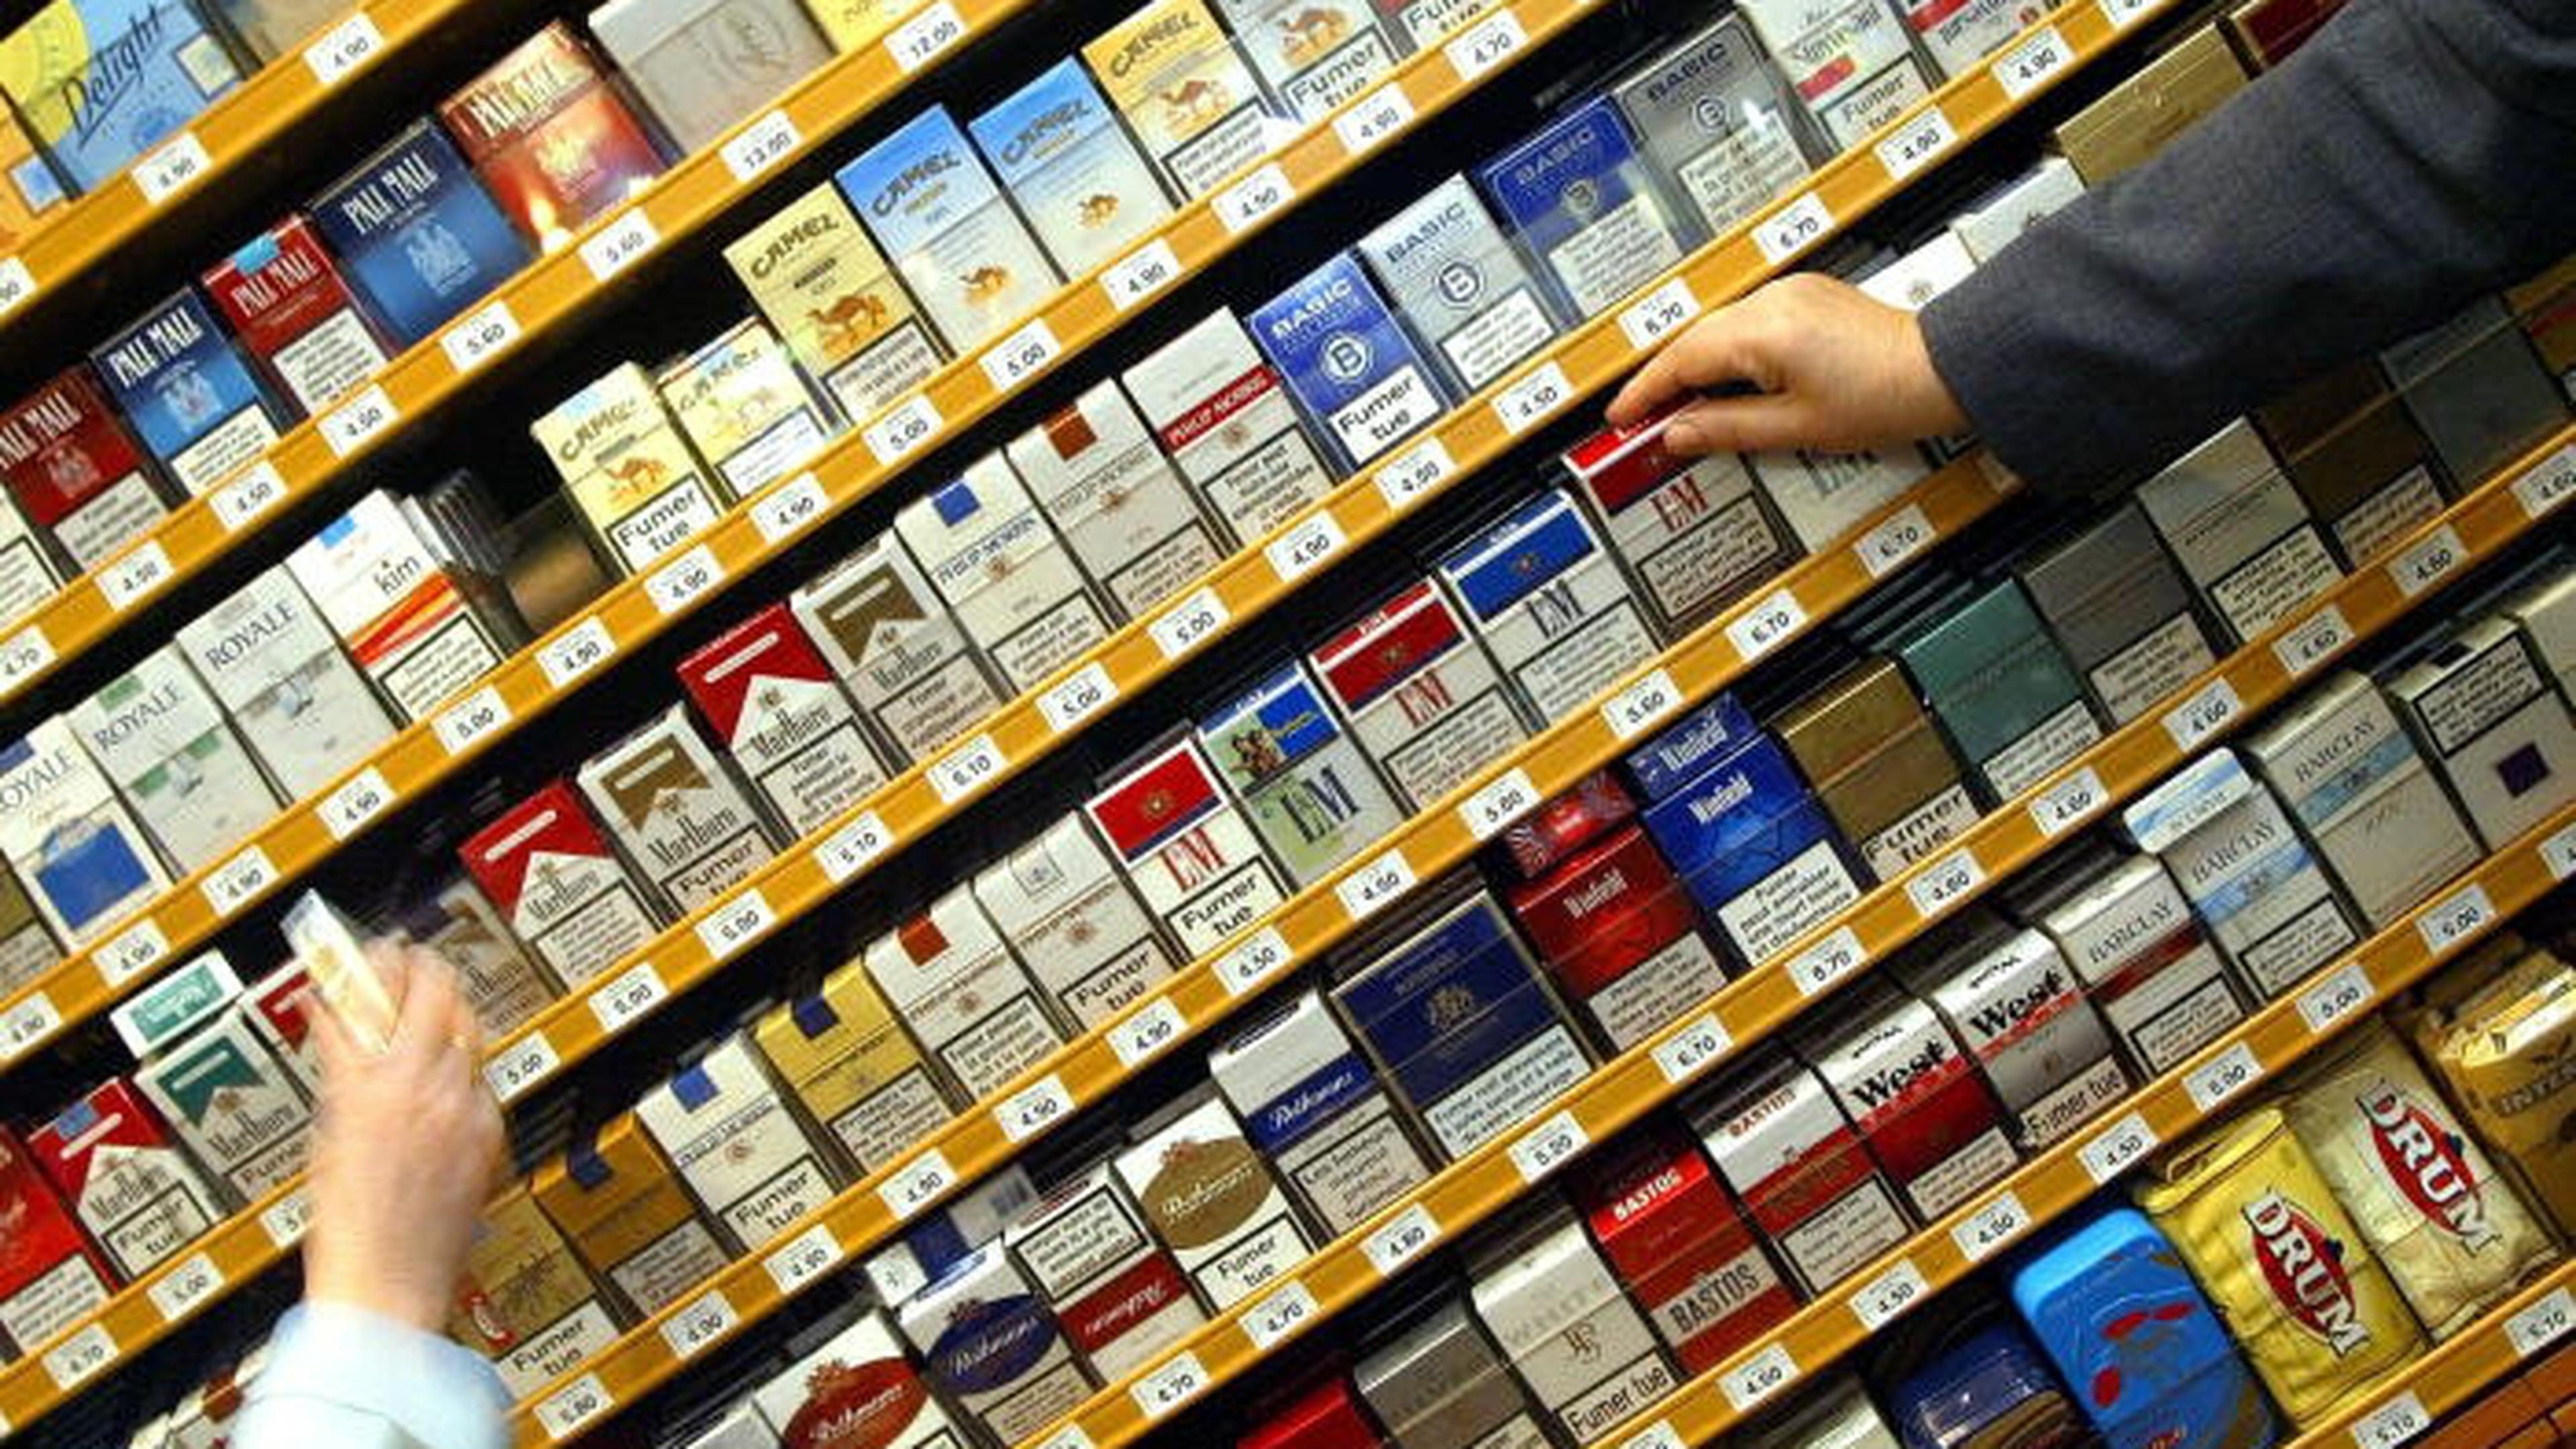 Frankreich geht erneut gegen echte Zigaretten aus Luxemburg vor